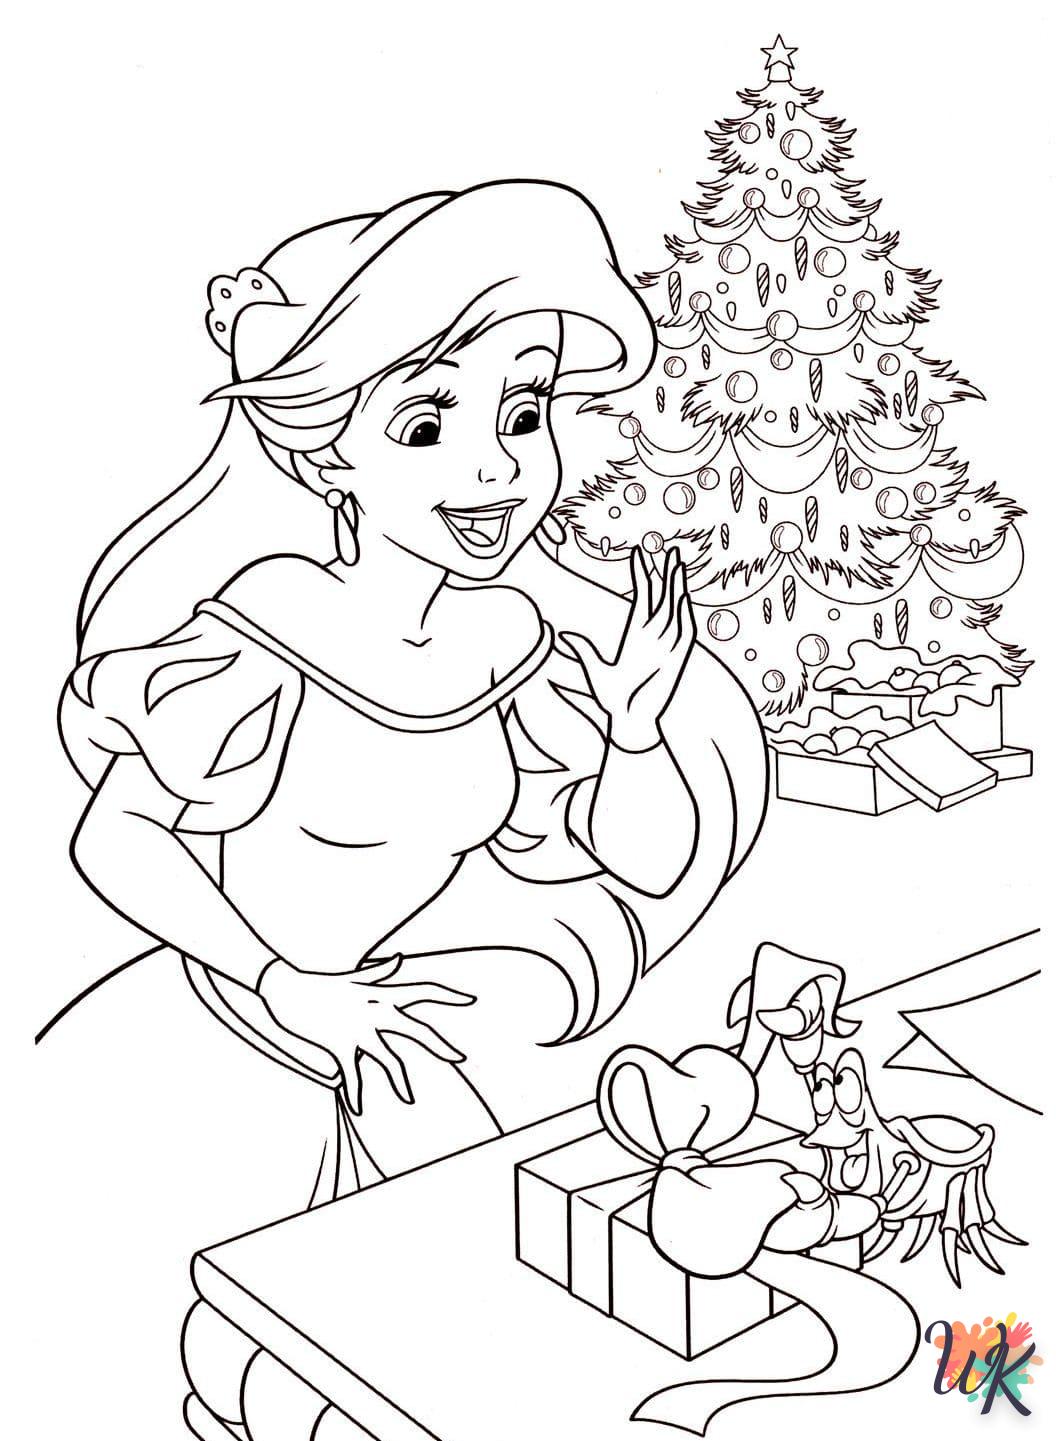 Dibujos para Colorear Navidad de dibujos animados 13